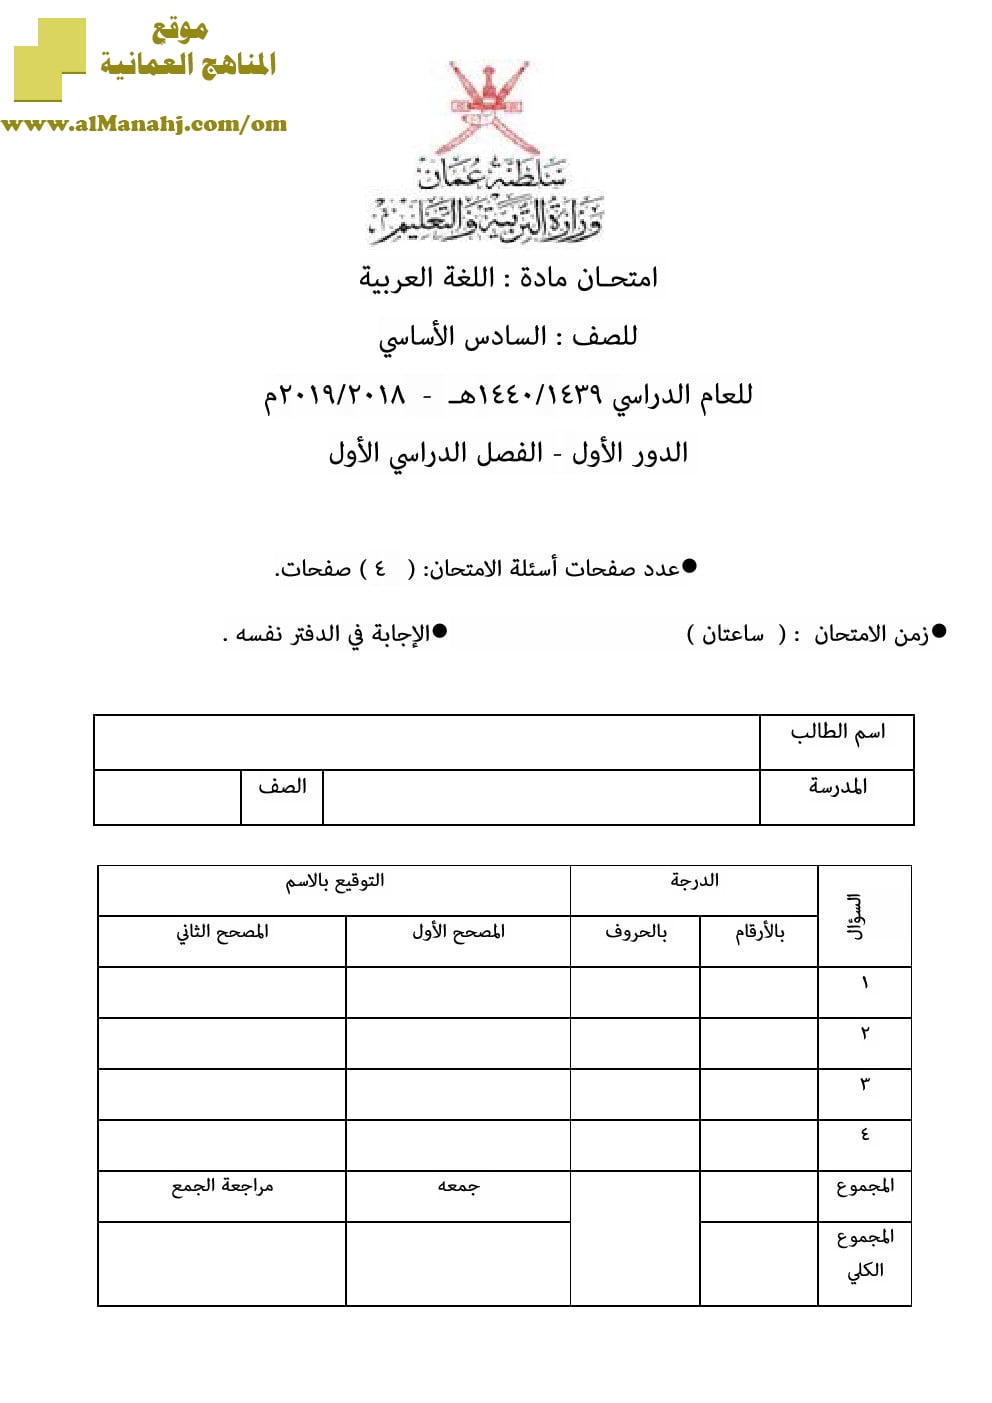 أسئلة وإجابة الامتحان الرسمي للفصل الدراسي الأول الدور الأول والثاني ~ (لغة عربية) السادس